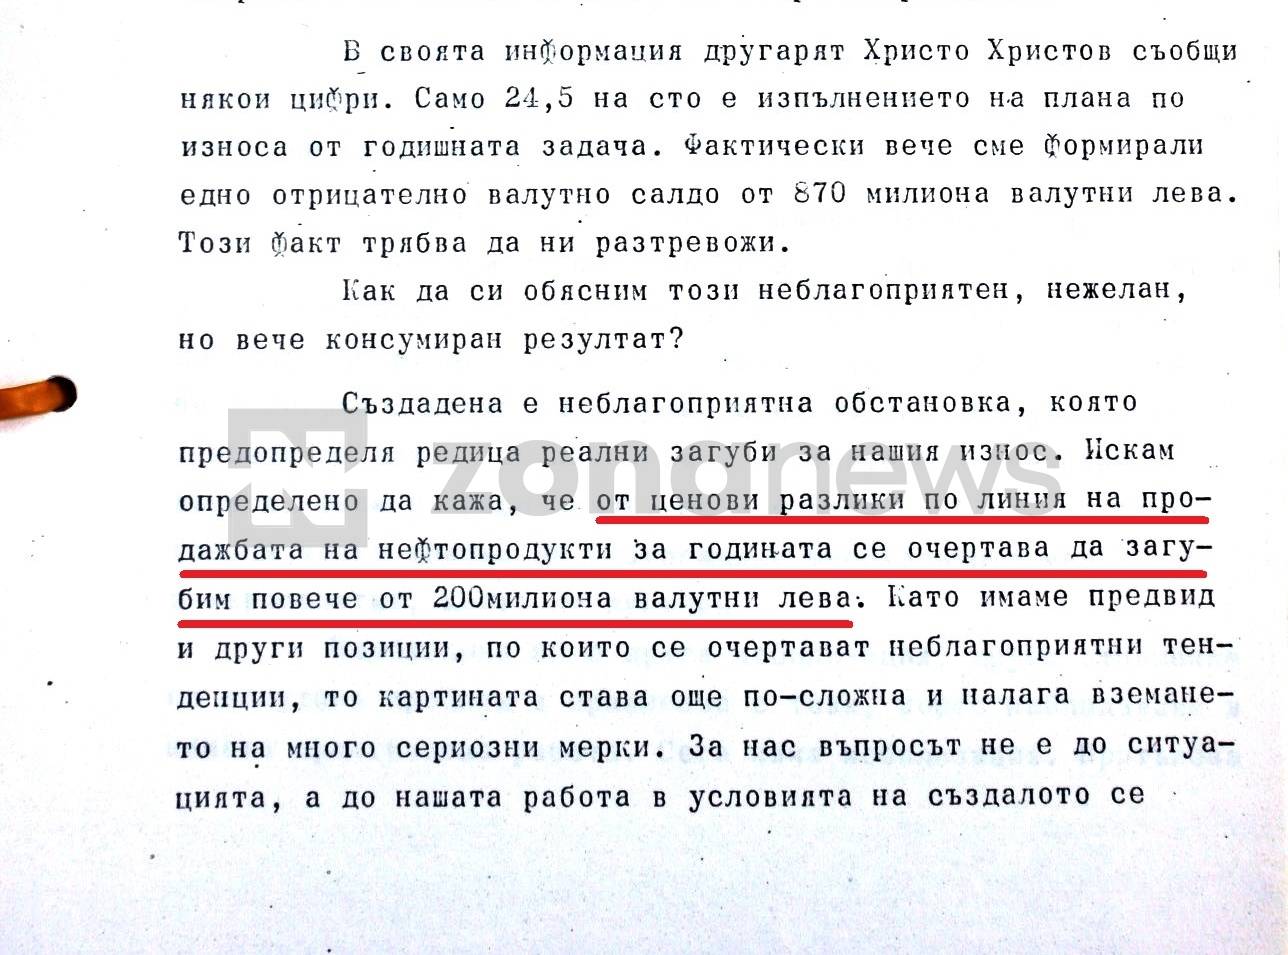 Премиерът Георги Атанасов през 1986 г. - Губим по 200 млн. валутни лева годишно от реекспорт на нефтопродукти